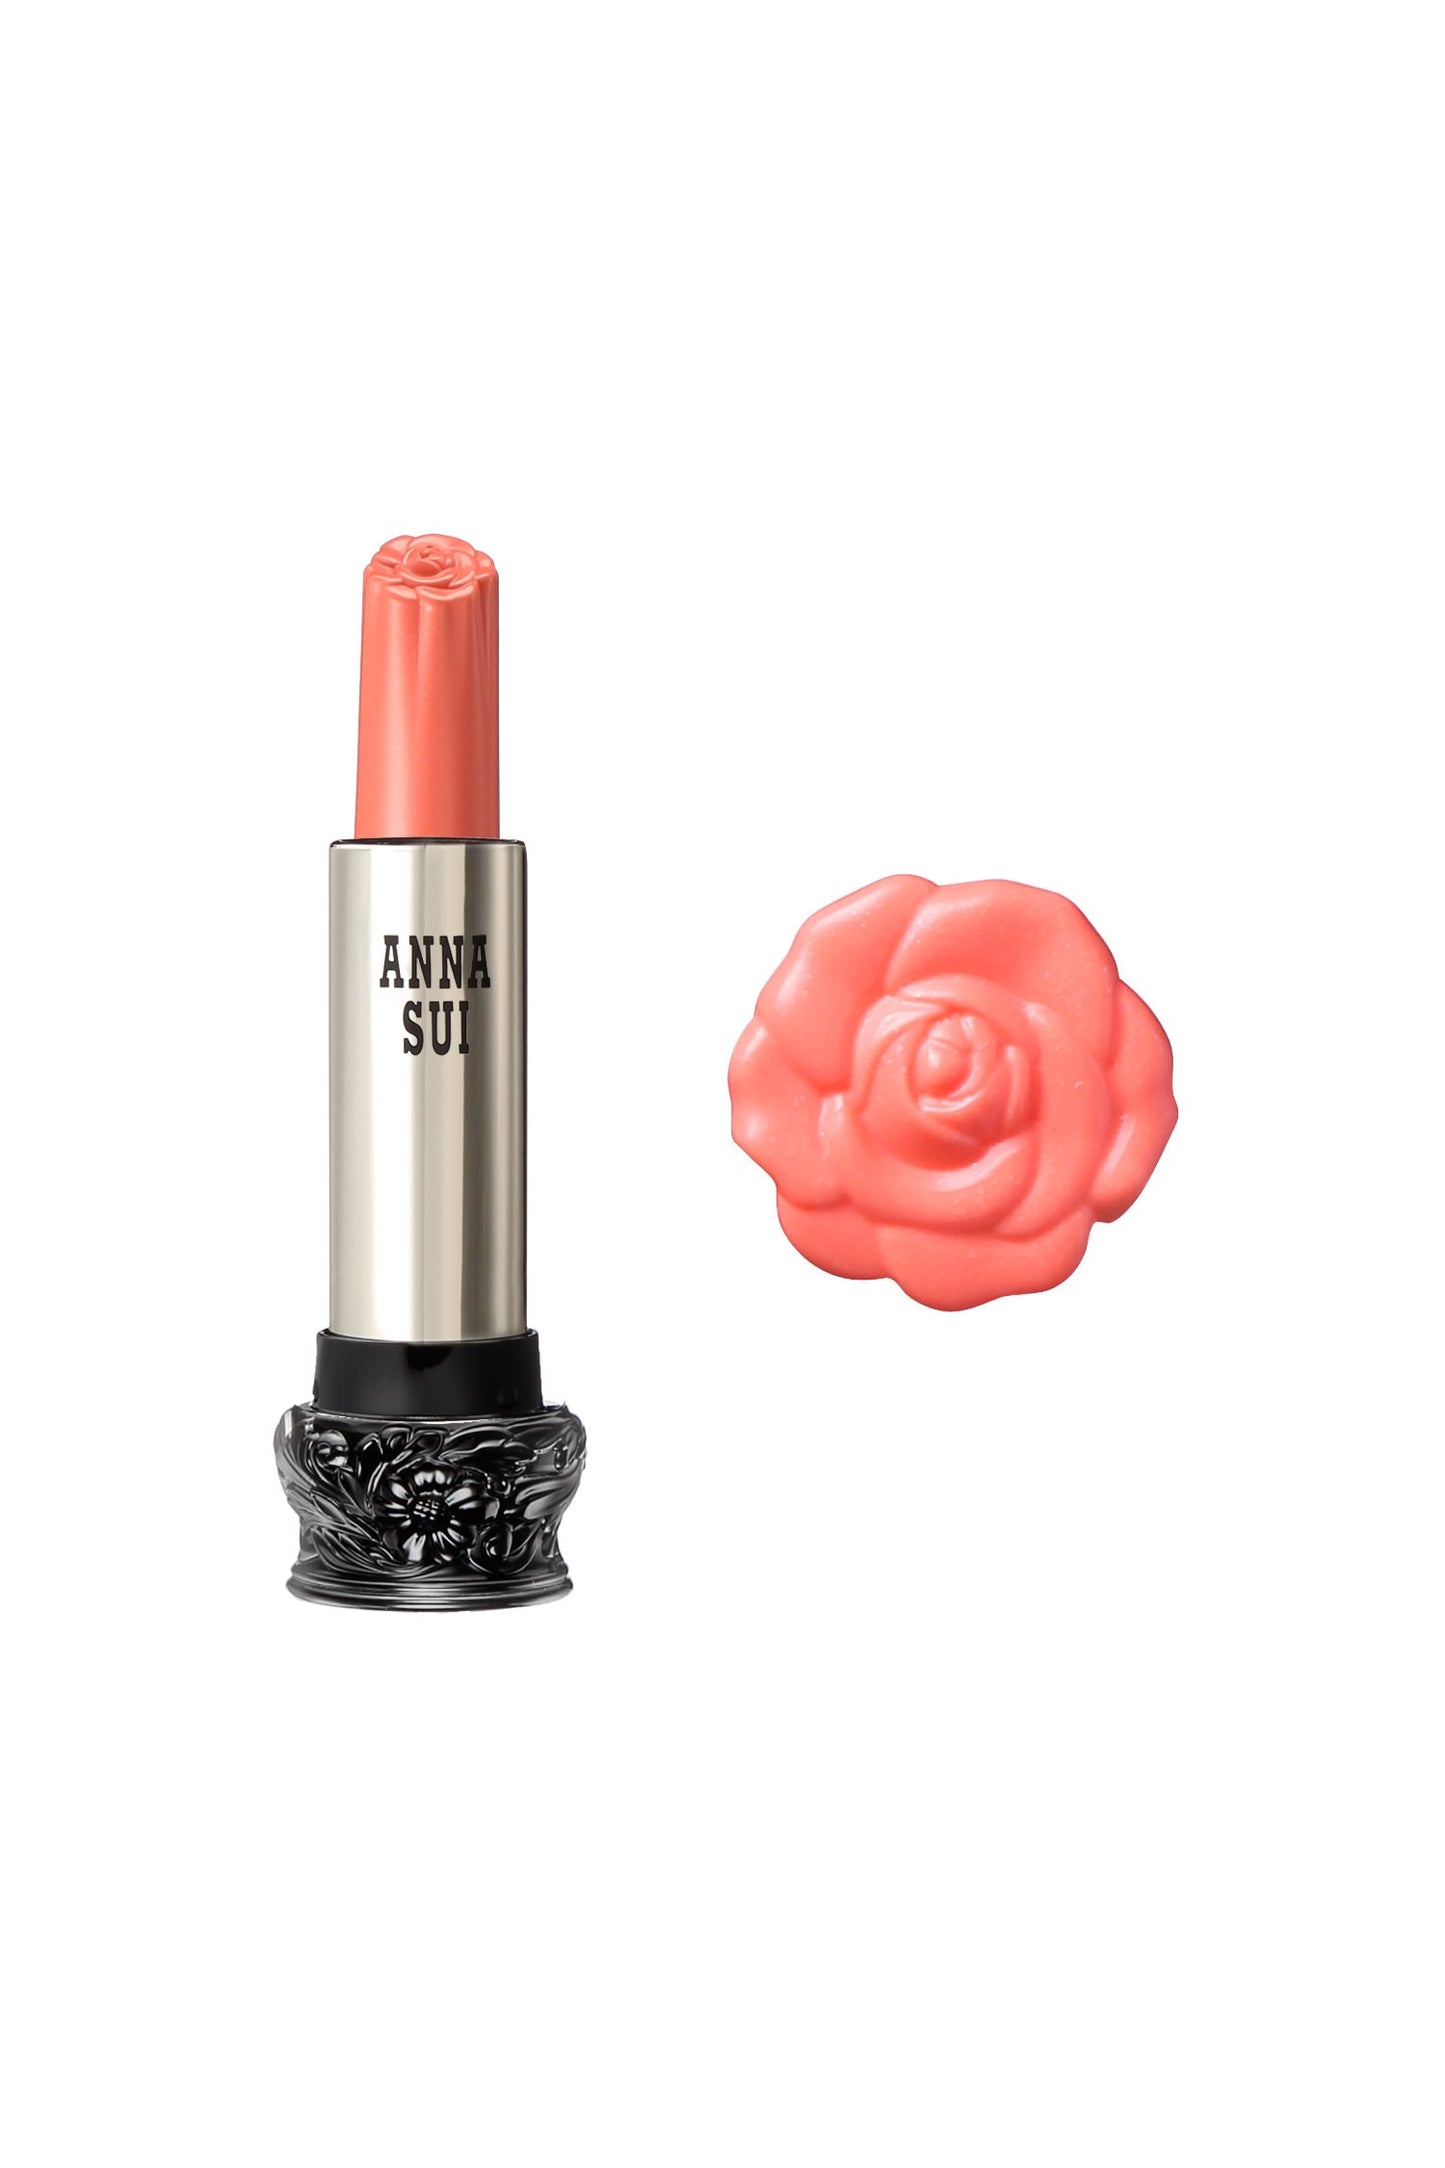 600 - 珊瑚甜豌豆唇膏 F： 仙女花， 在一個圓柱形容器， 大黑色底座， 雕刻花卉設計， 金屬身體